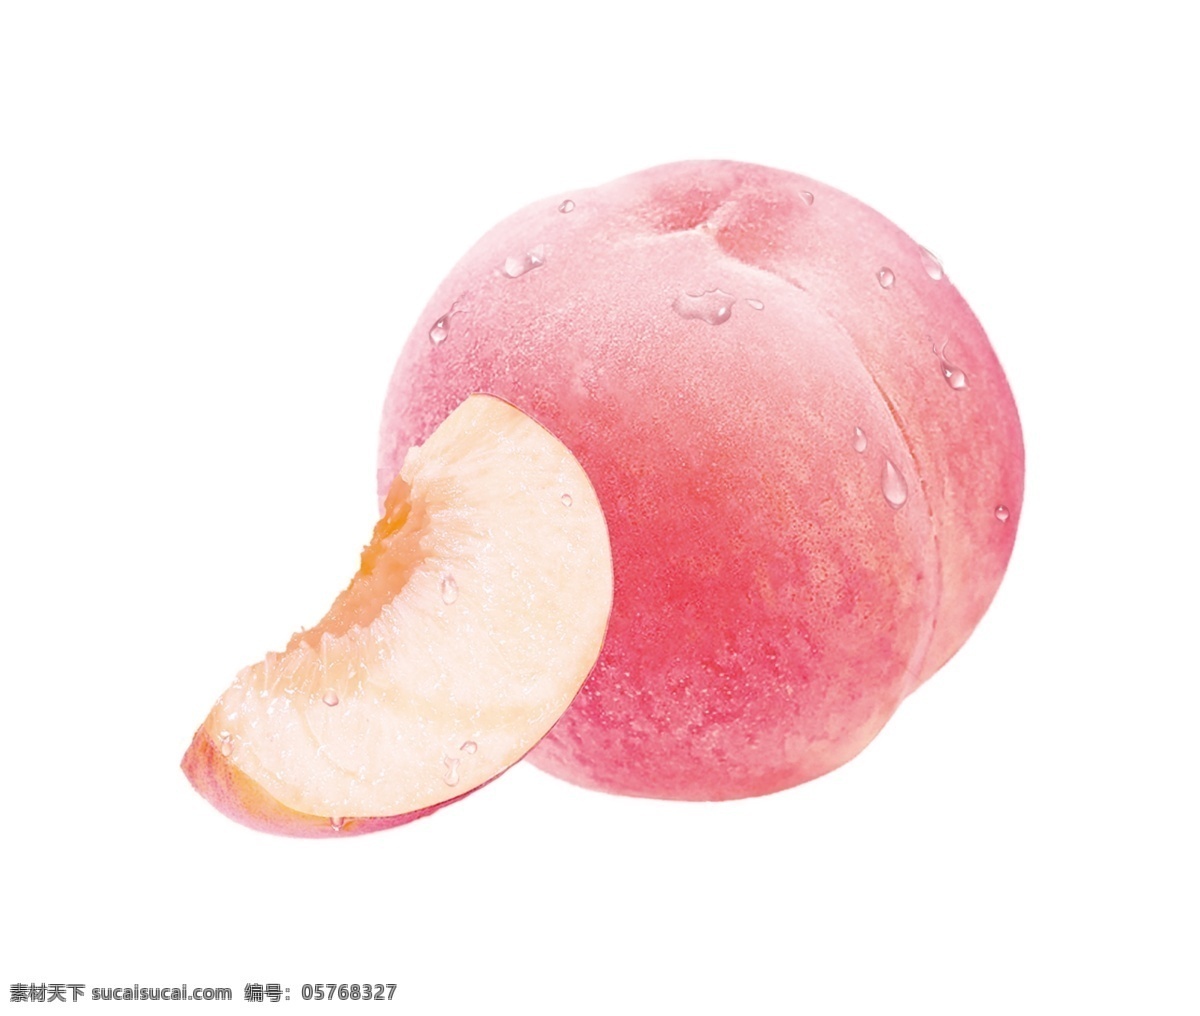 水蜜桃图片 水蜜桃 桃子 大桃子 水果桃子 蜜桃 水果类 分层